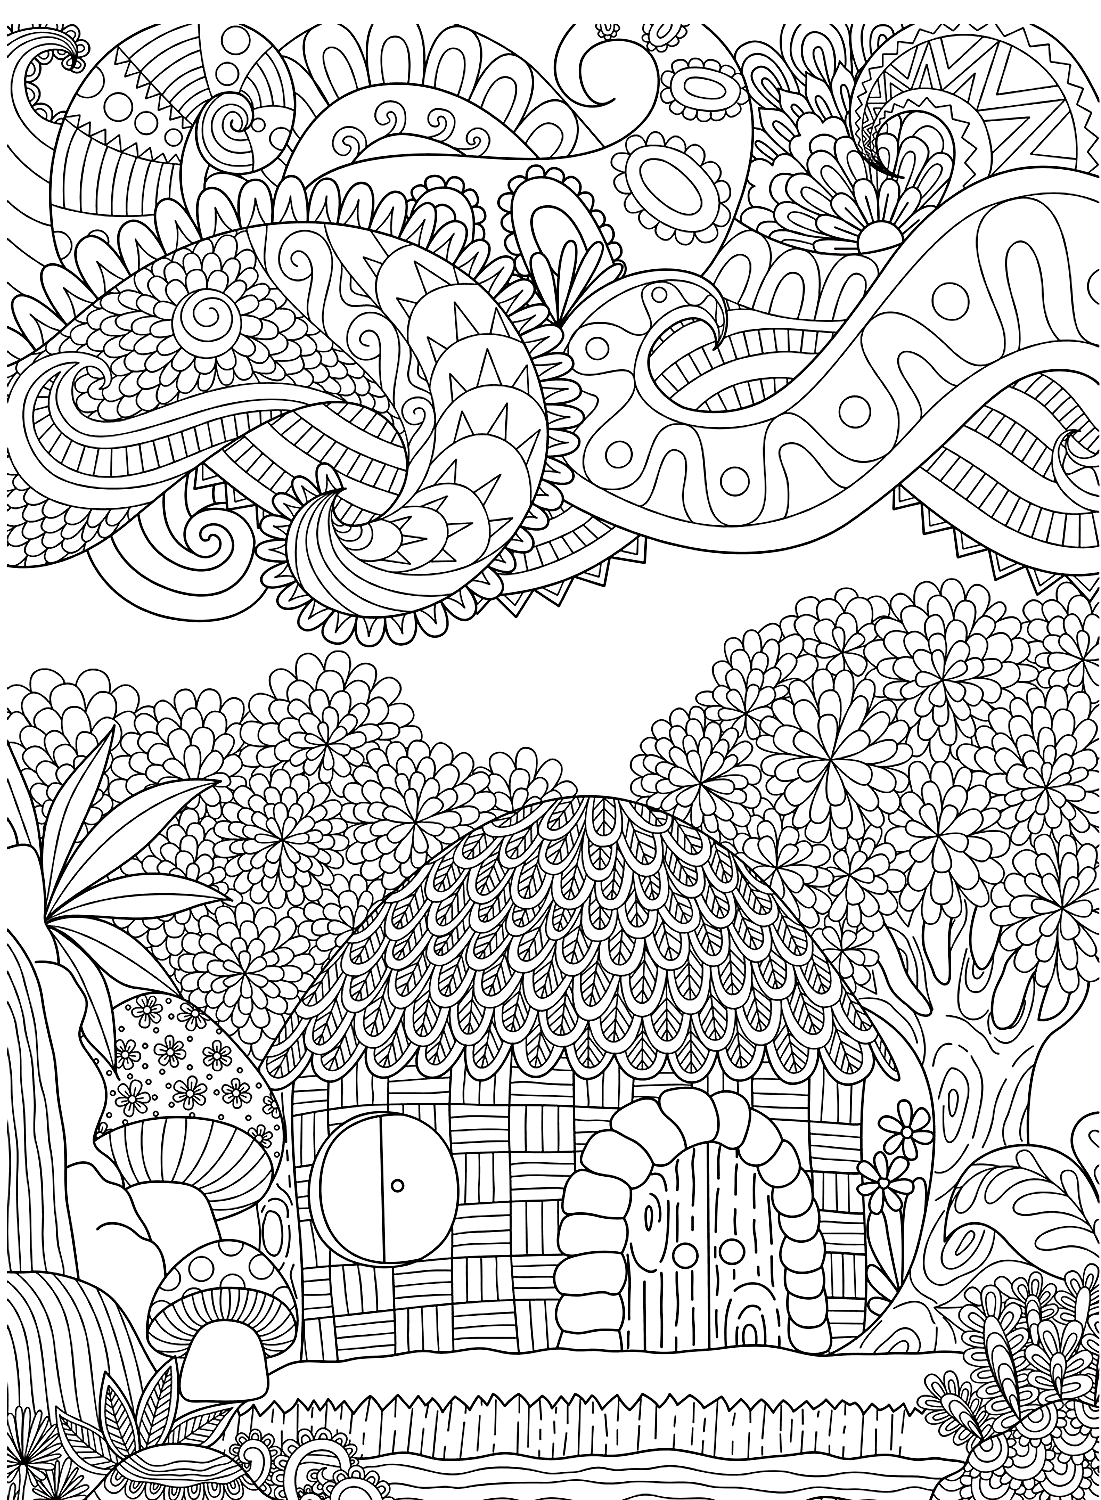 Mandala gardens coloring page